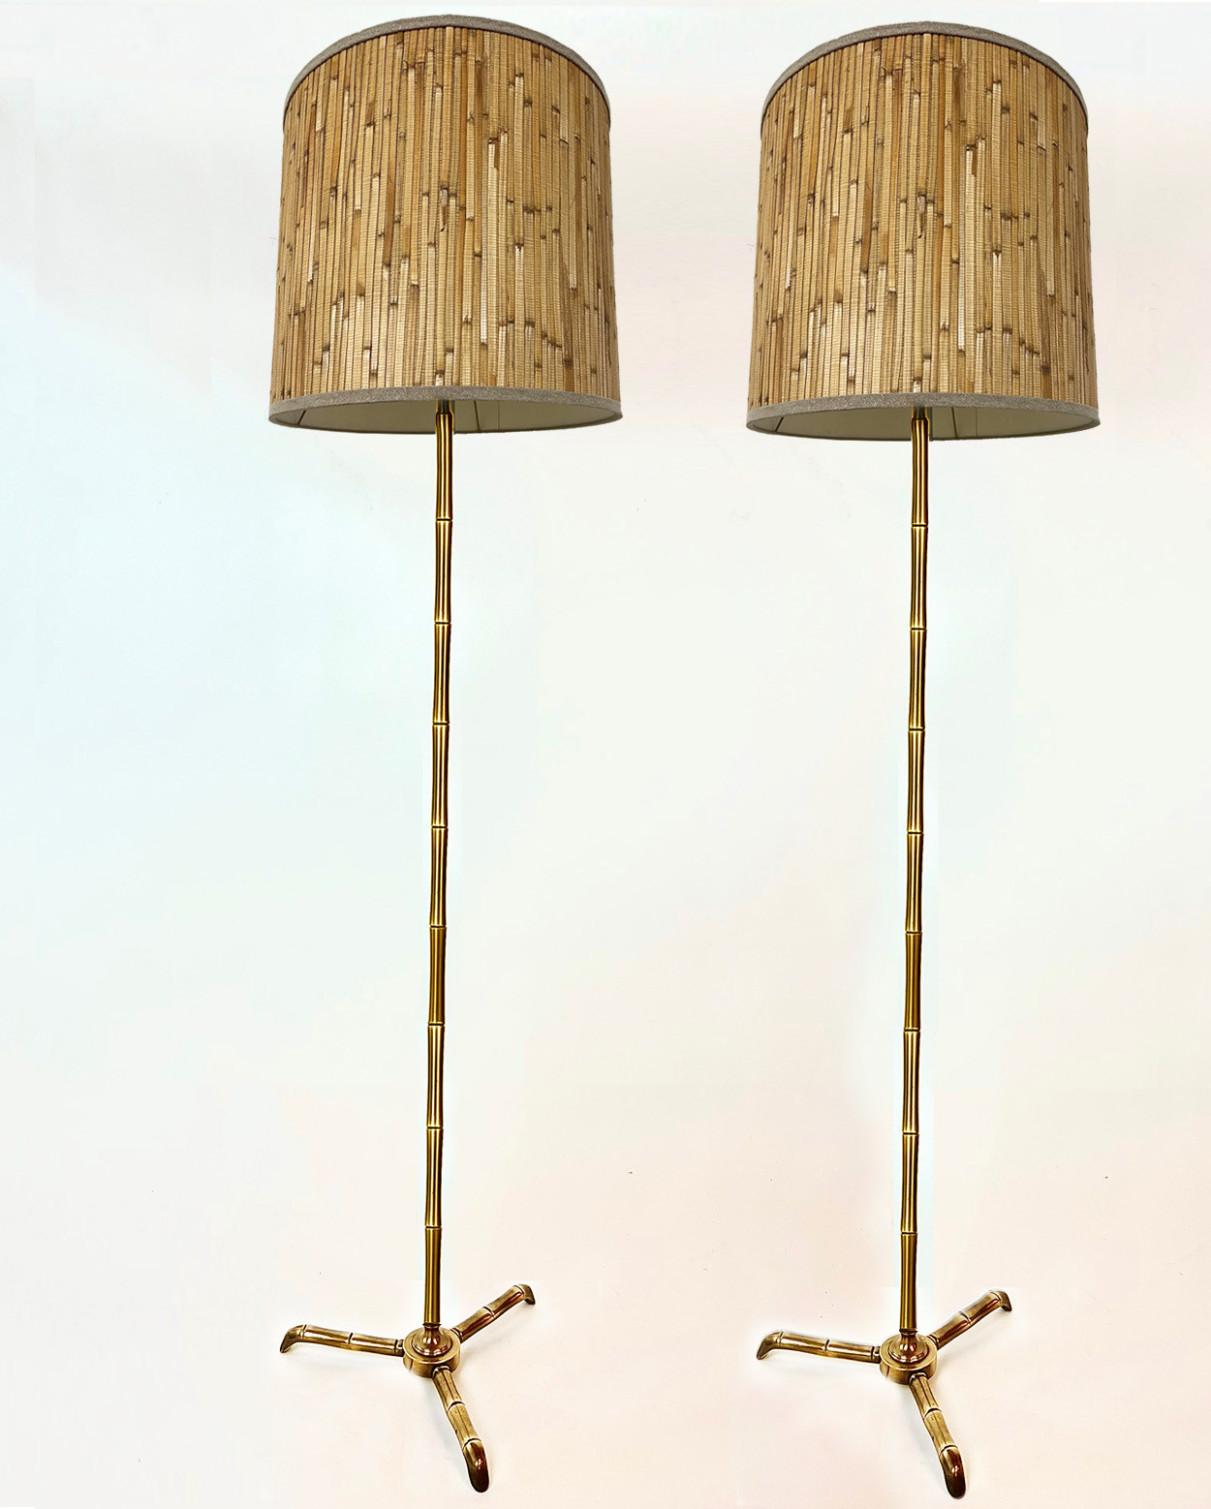 Lampe standard en laiton simulé bambou du début du 20e siècle, avec une base tripode, attribuée à la Maison Baguès. Remarque : abat-jour en bambou inclus.
Il est également possible de l'acheter sans teinte.

Objet vintage en très bon état. Nous